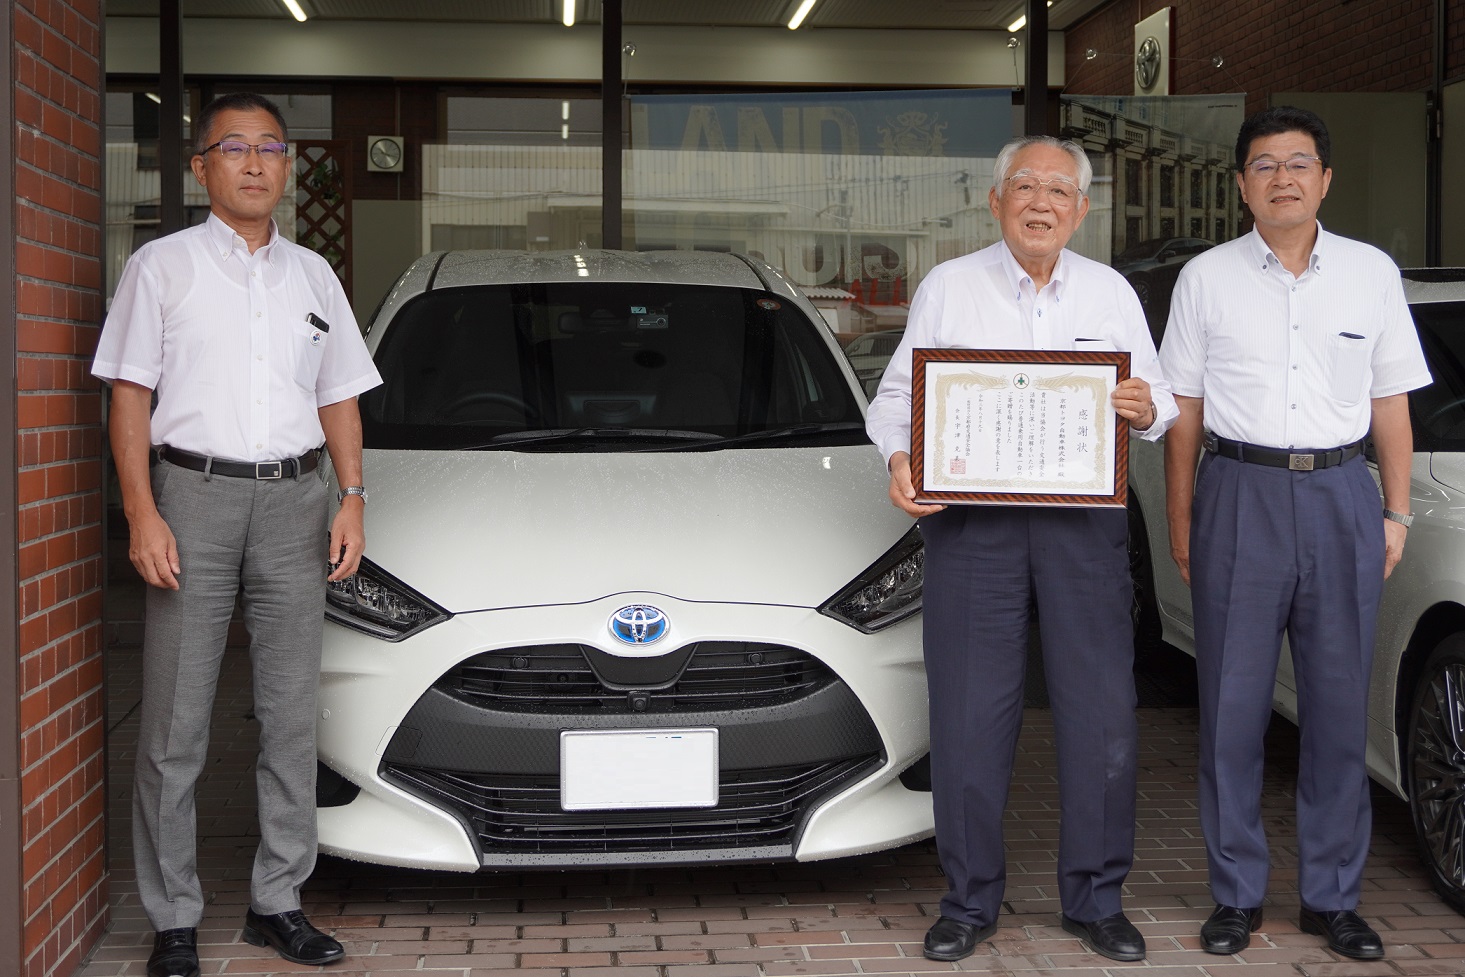 京都トヨタ自動車株式会社様に感謝状を贈呈